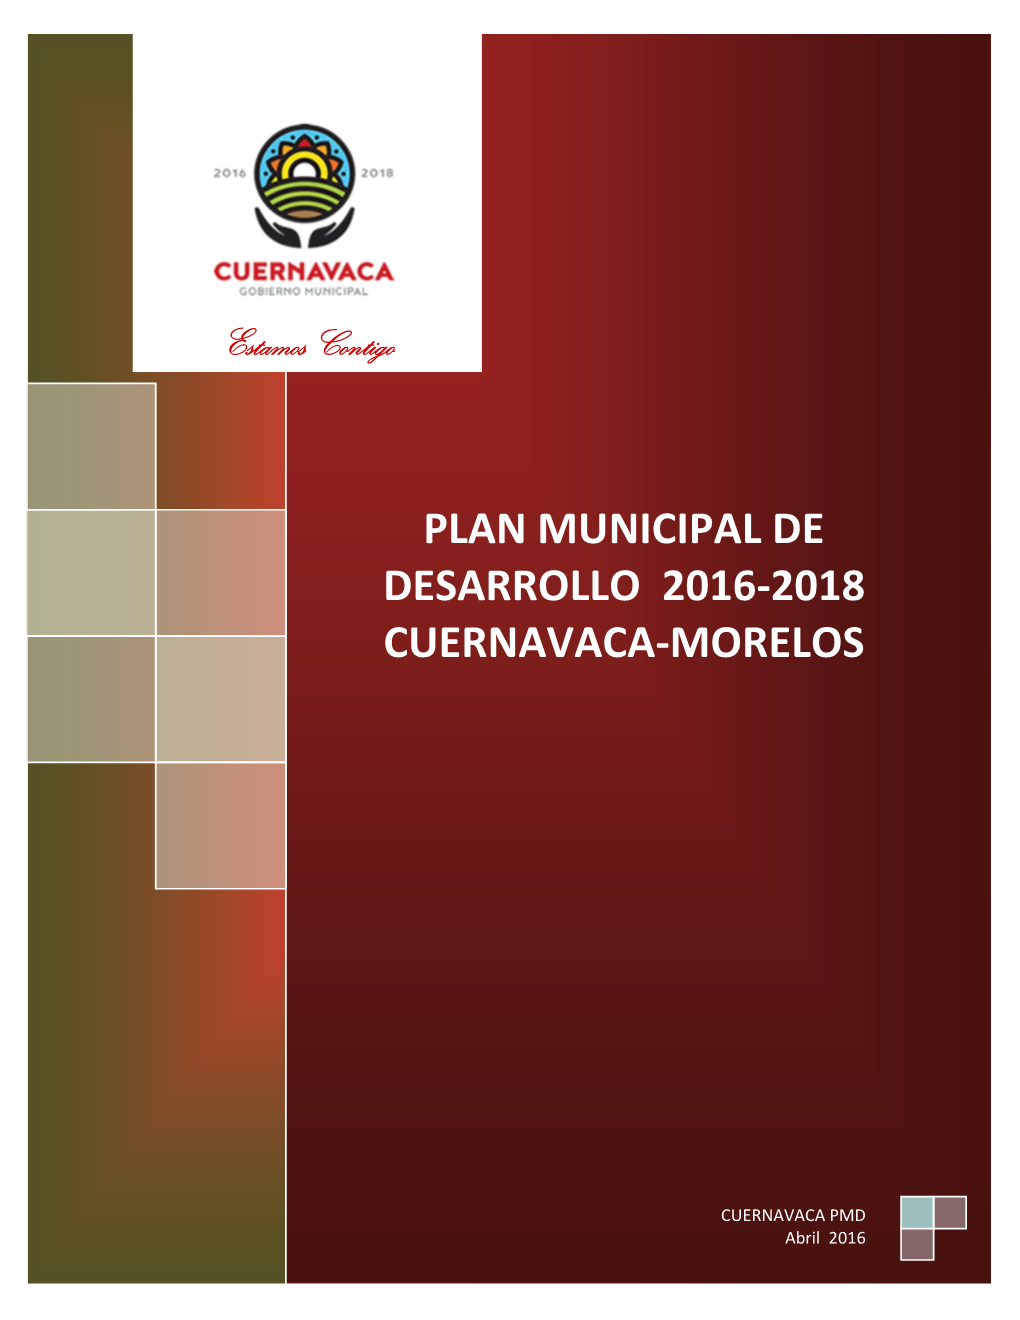 Plan Municipal De Desarrollo De Cuernavaca 2016-2018